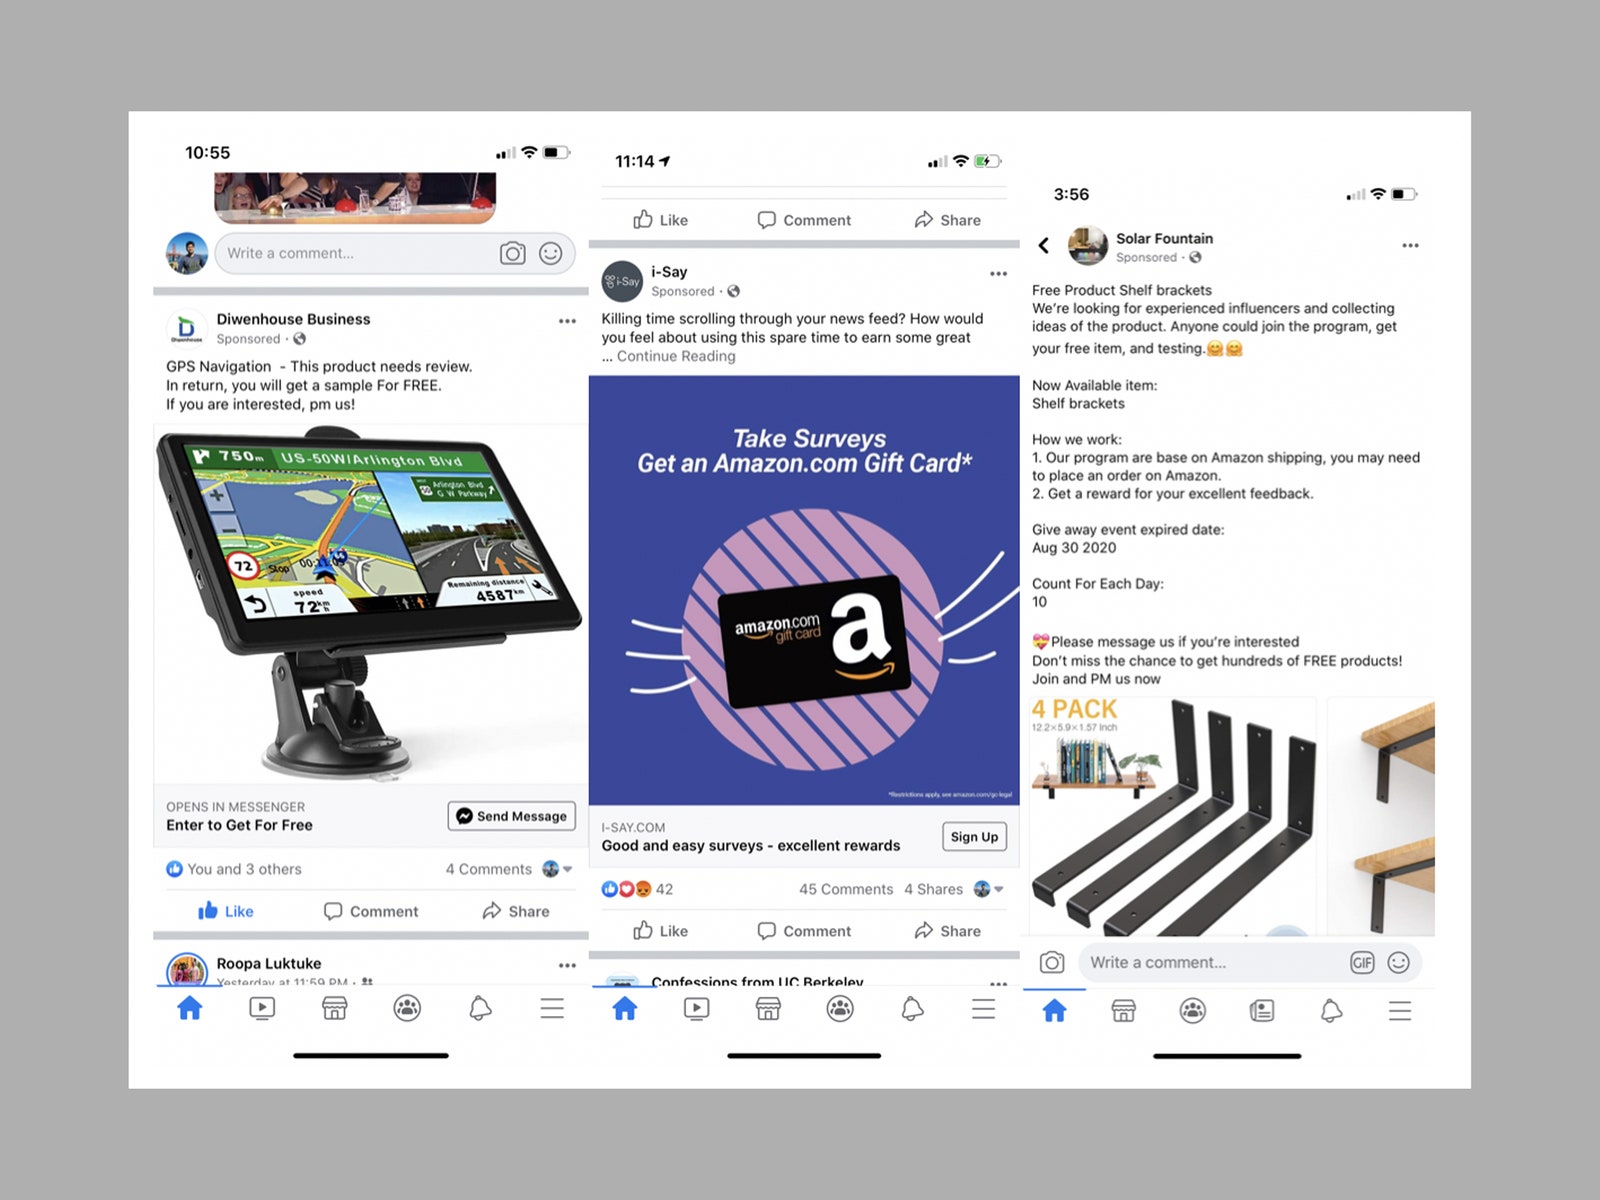 Capture d'écran de diverses publicités Facebook faisant la promotion de produits gratuits en échange d'avis Amazon.